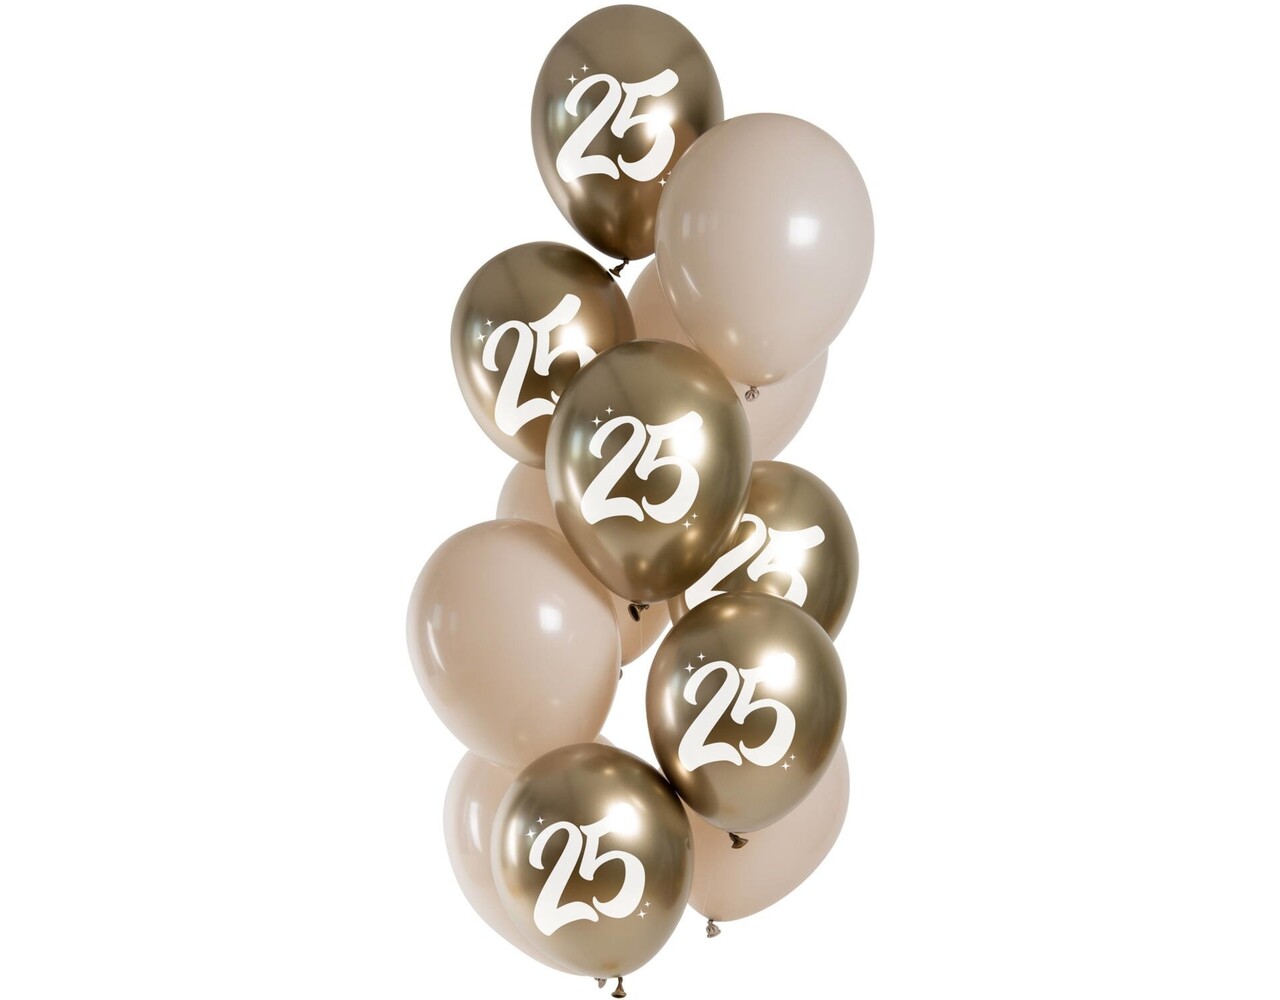 Ballons dorés 25 ans chromés 33cm 12pcs - Partywinkel